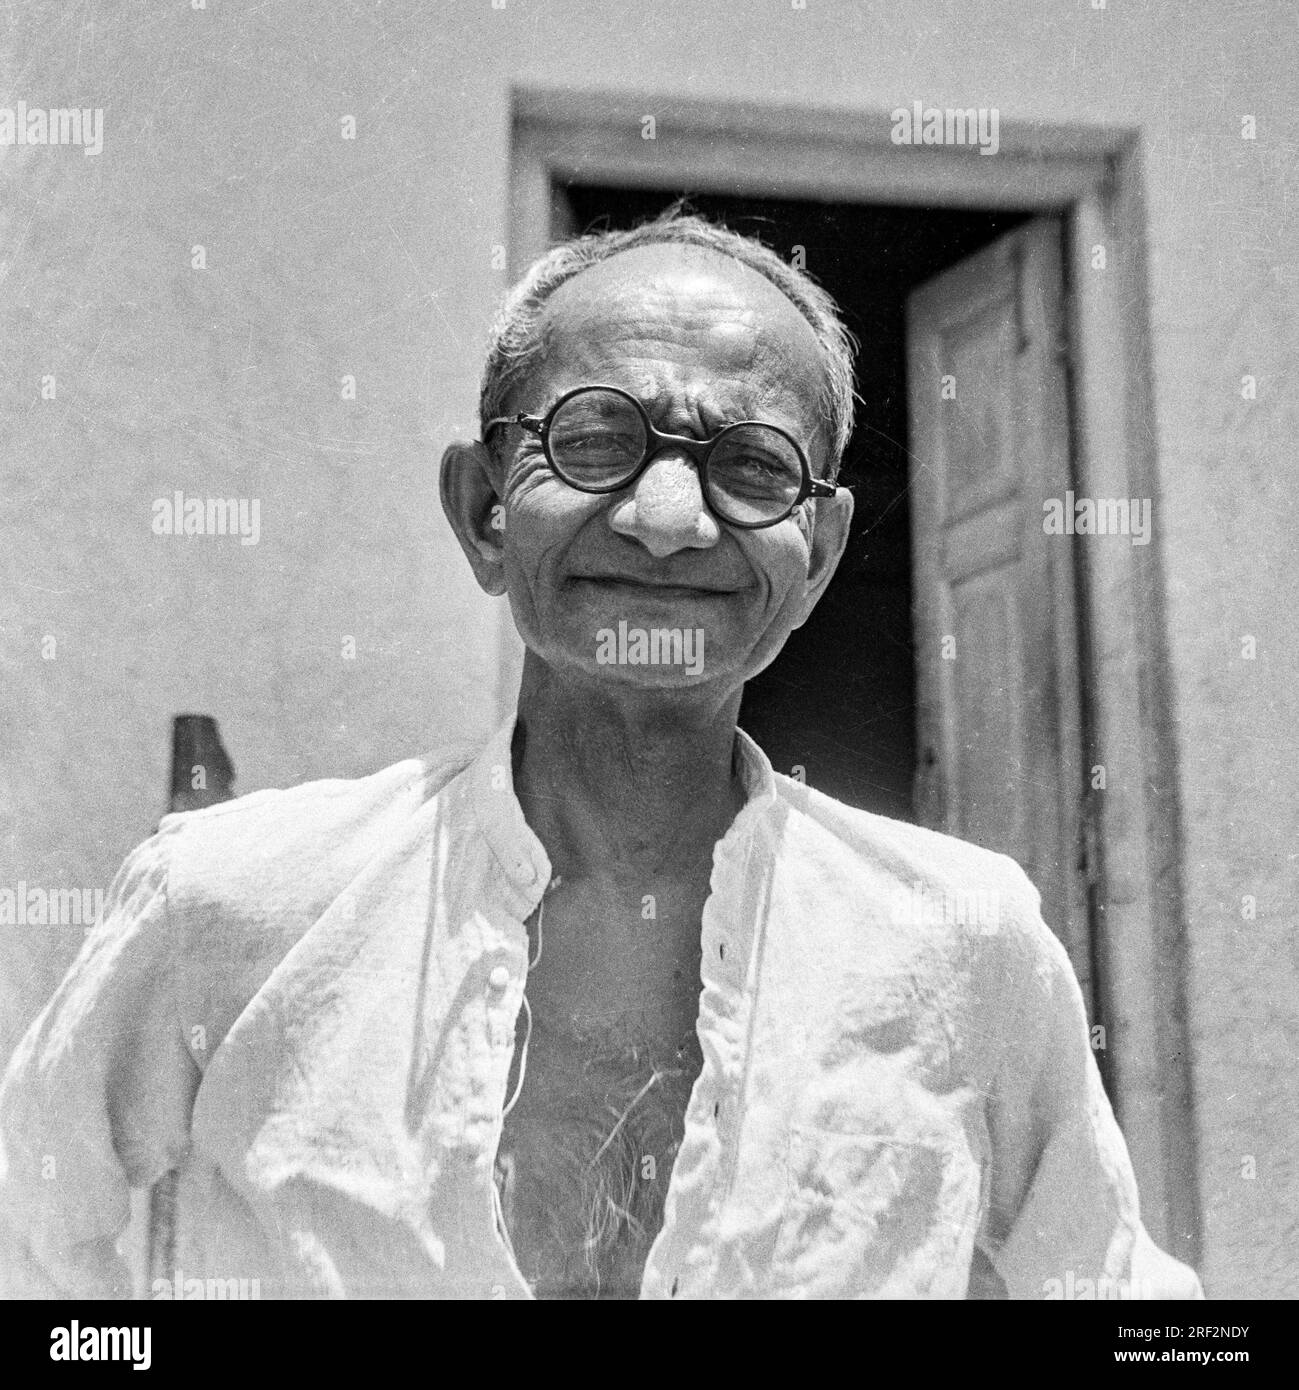 Vieux vintage des années 1900 noir et blanc portrait studio de vieil homme indien portant des lunettes rondes Inde des années 1940 Banque D'Images